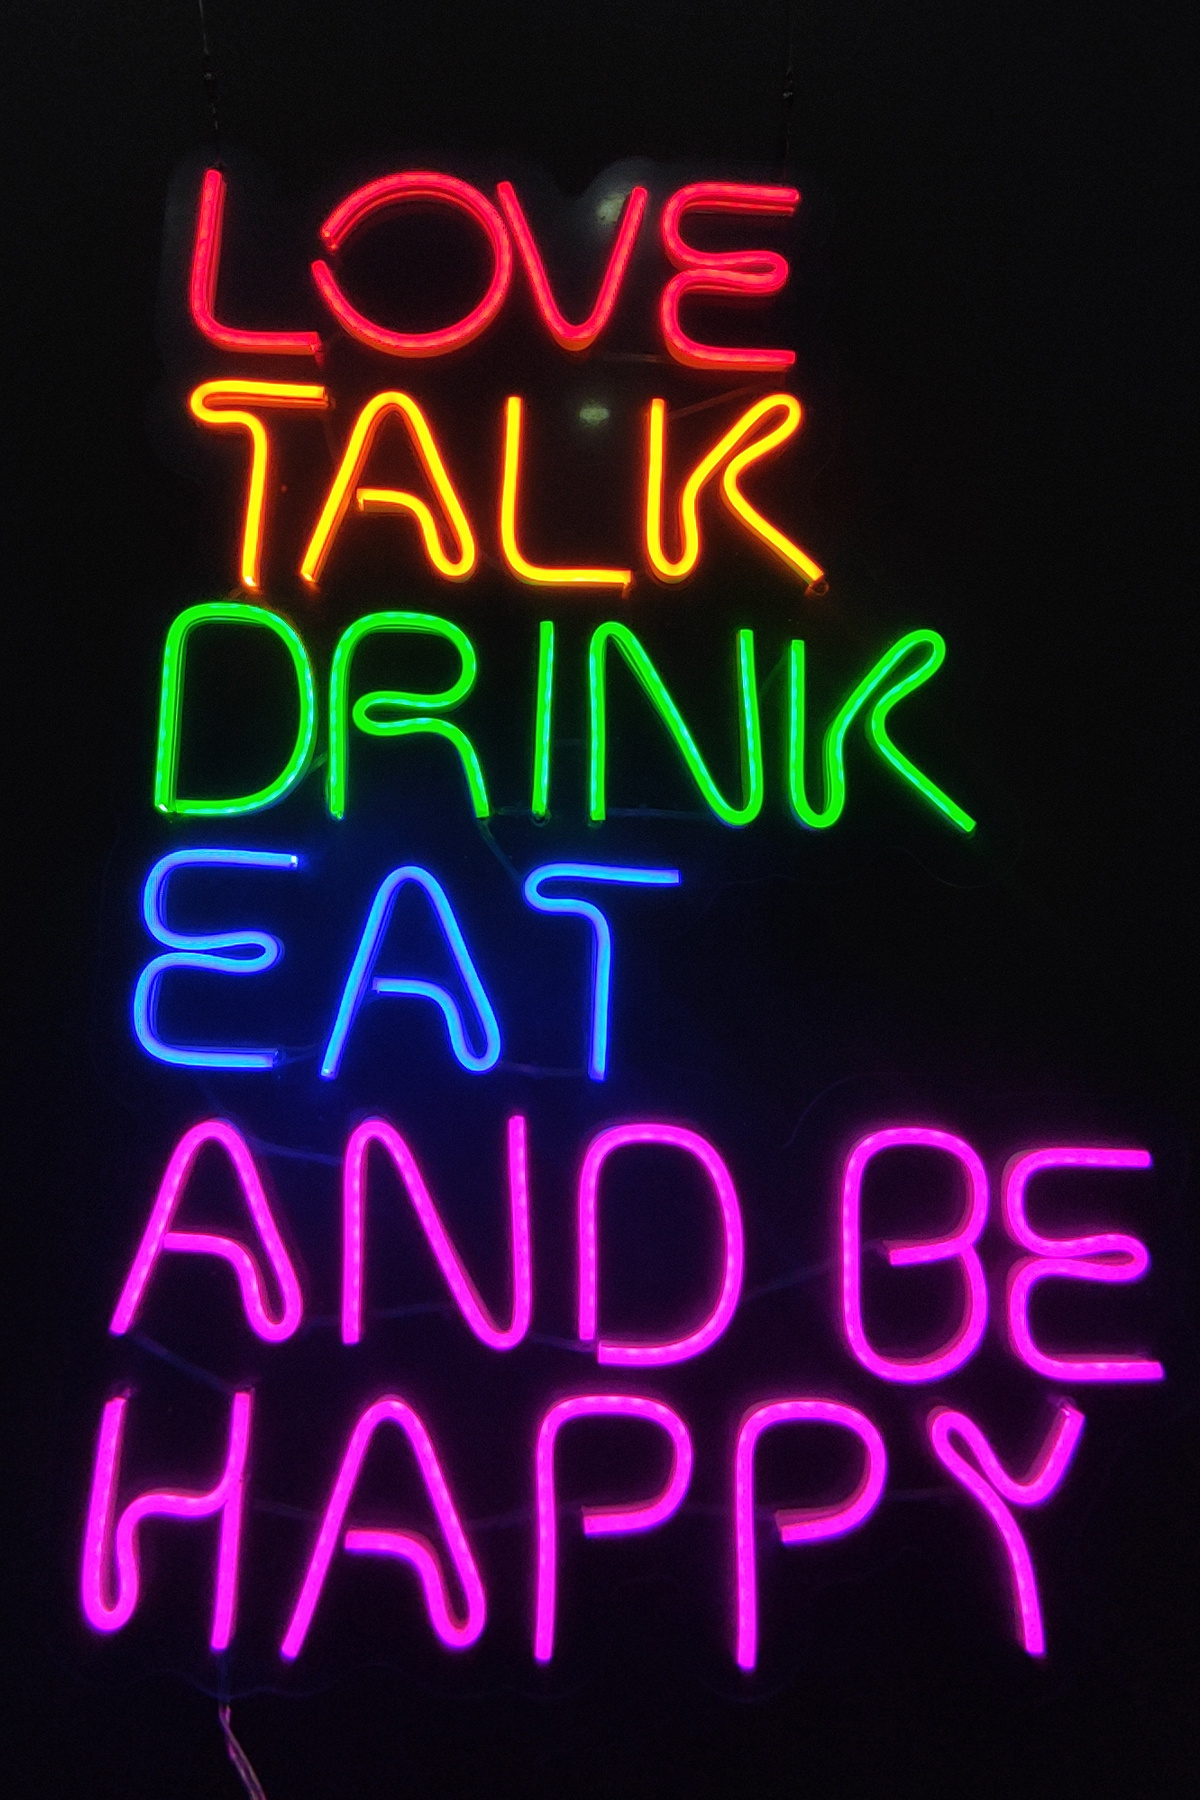 Işıklı Love Talk Drink Eat And Be Happy: Neon LED Tabela Duvar Dekorasyon Ürünü 